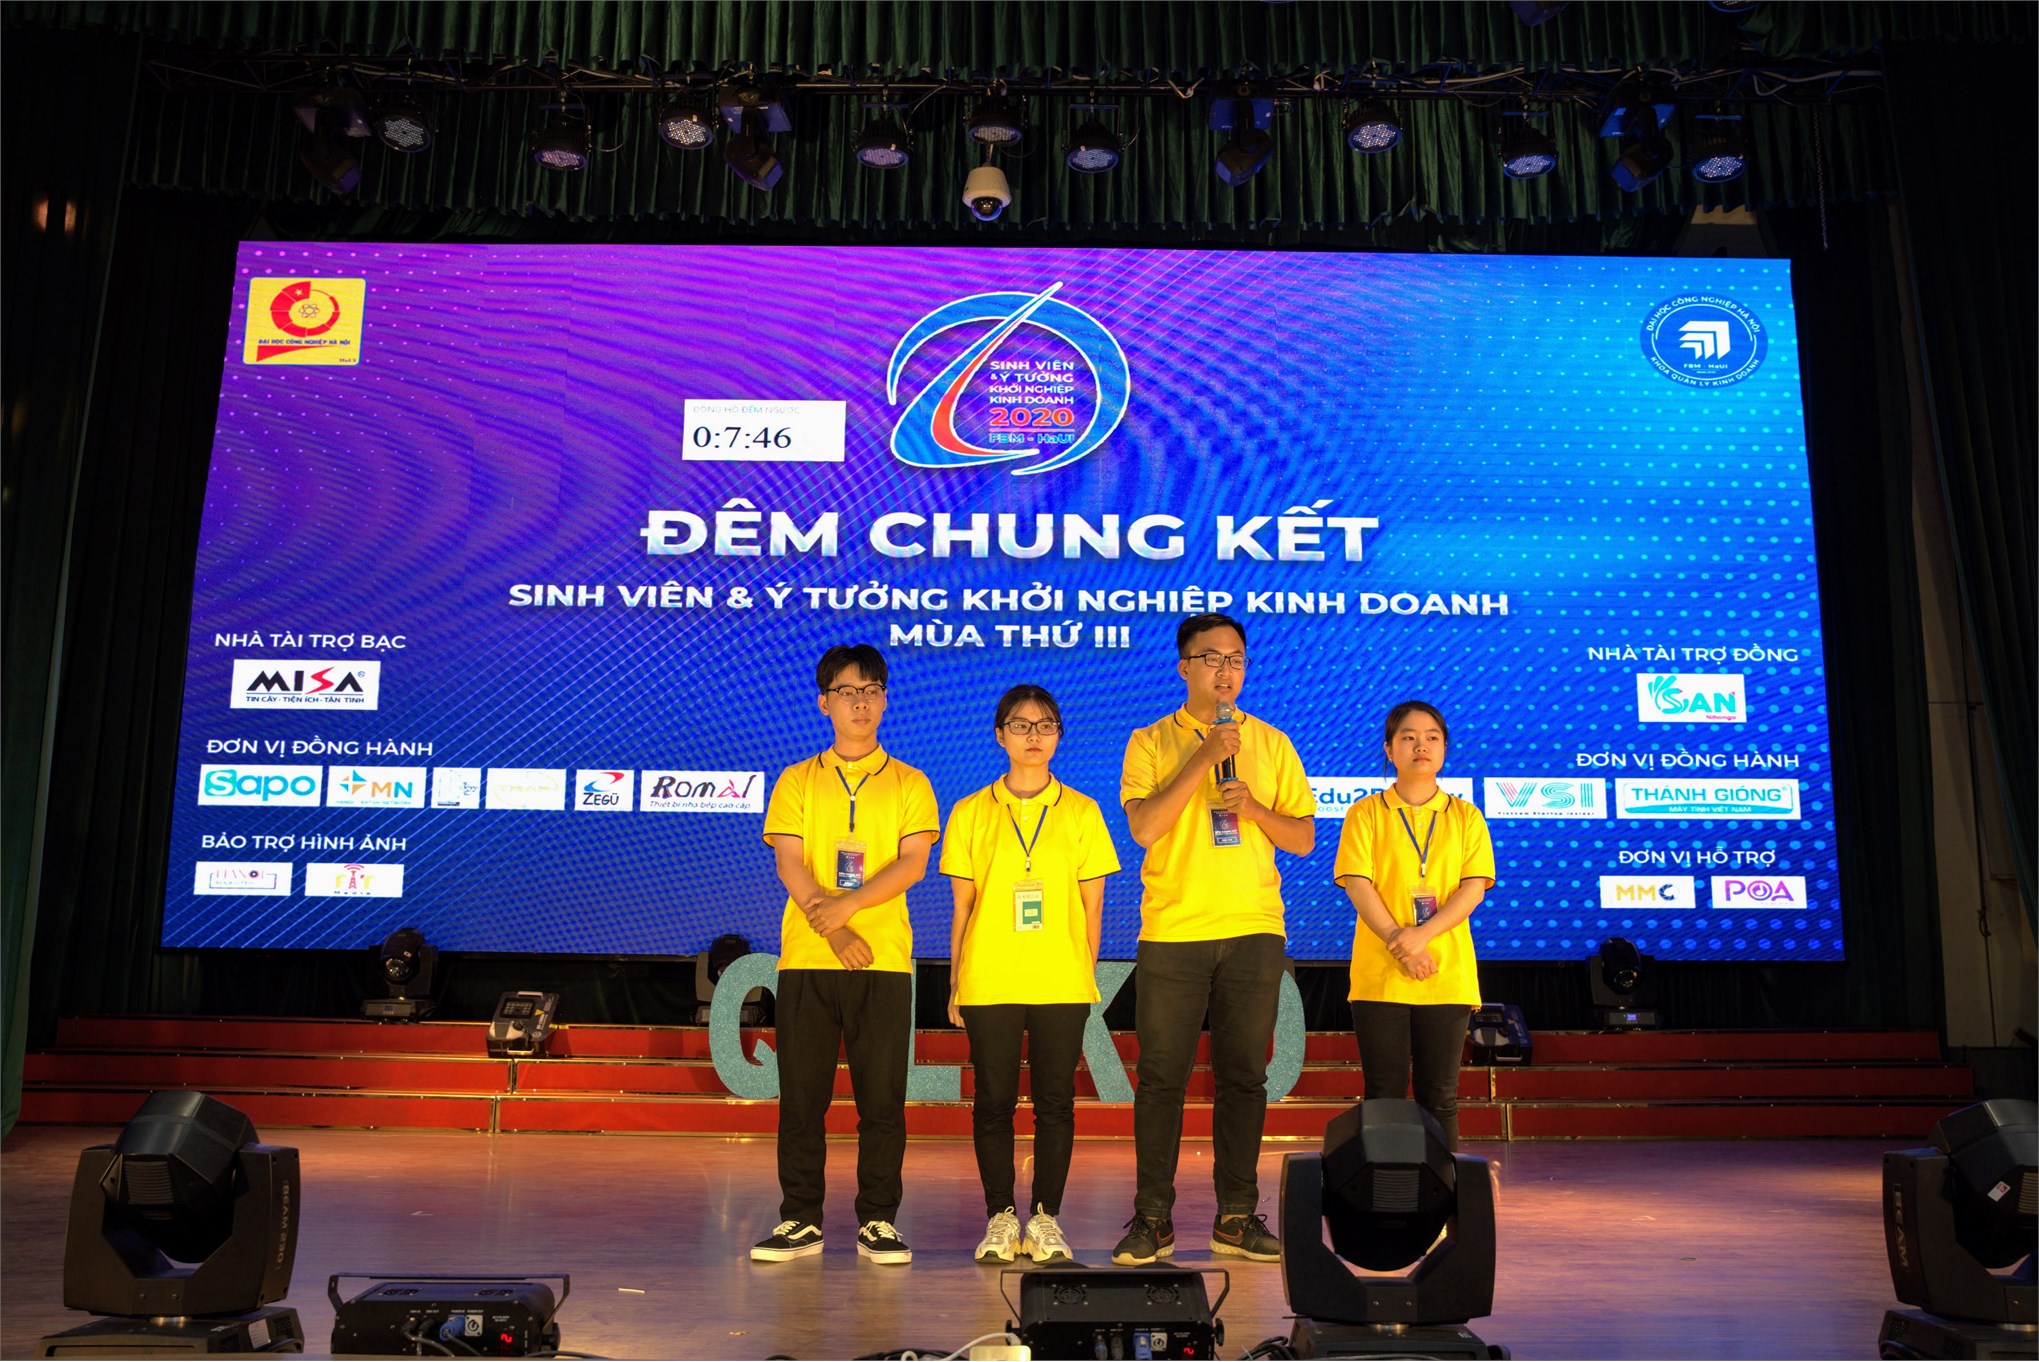 Đội thi “Sắc màu” xuất sắc giành giải nhất cuộc thi “Sinh viên và ý tưởng khởi nghiệp” năm 2020